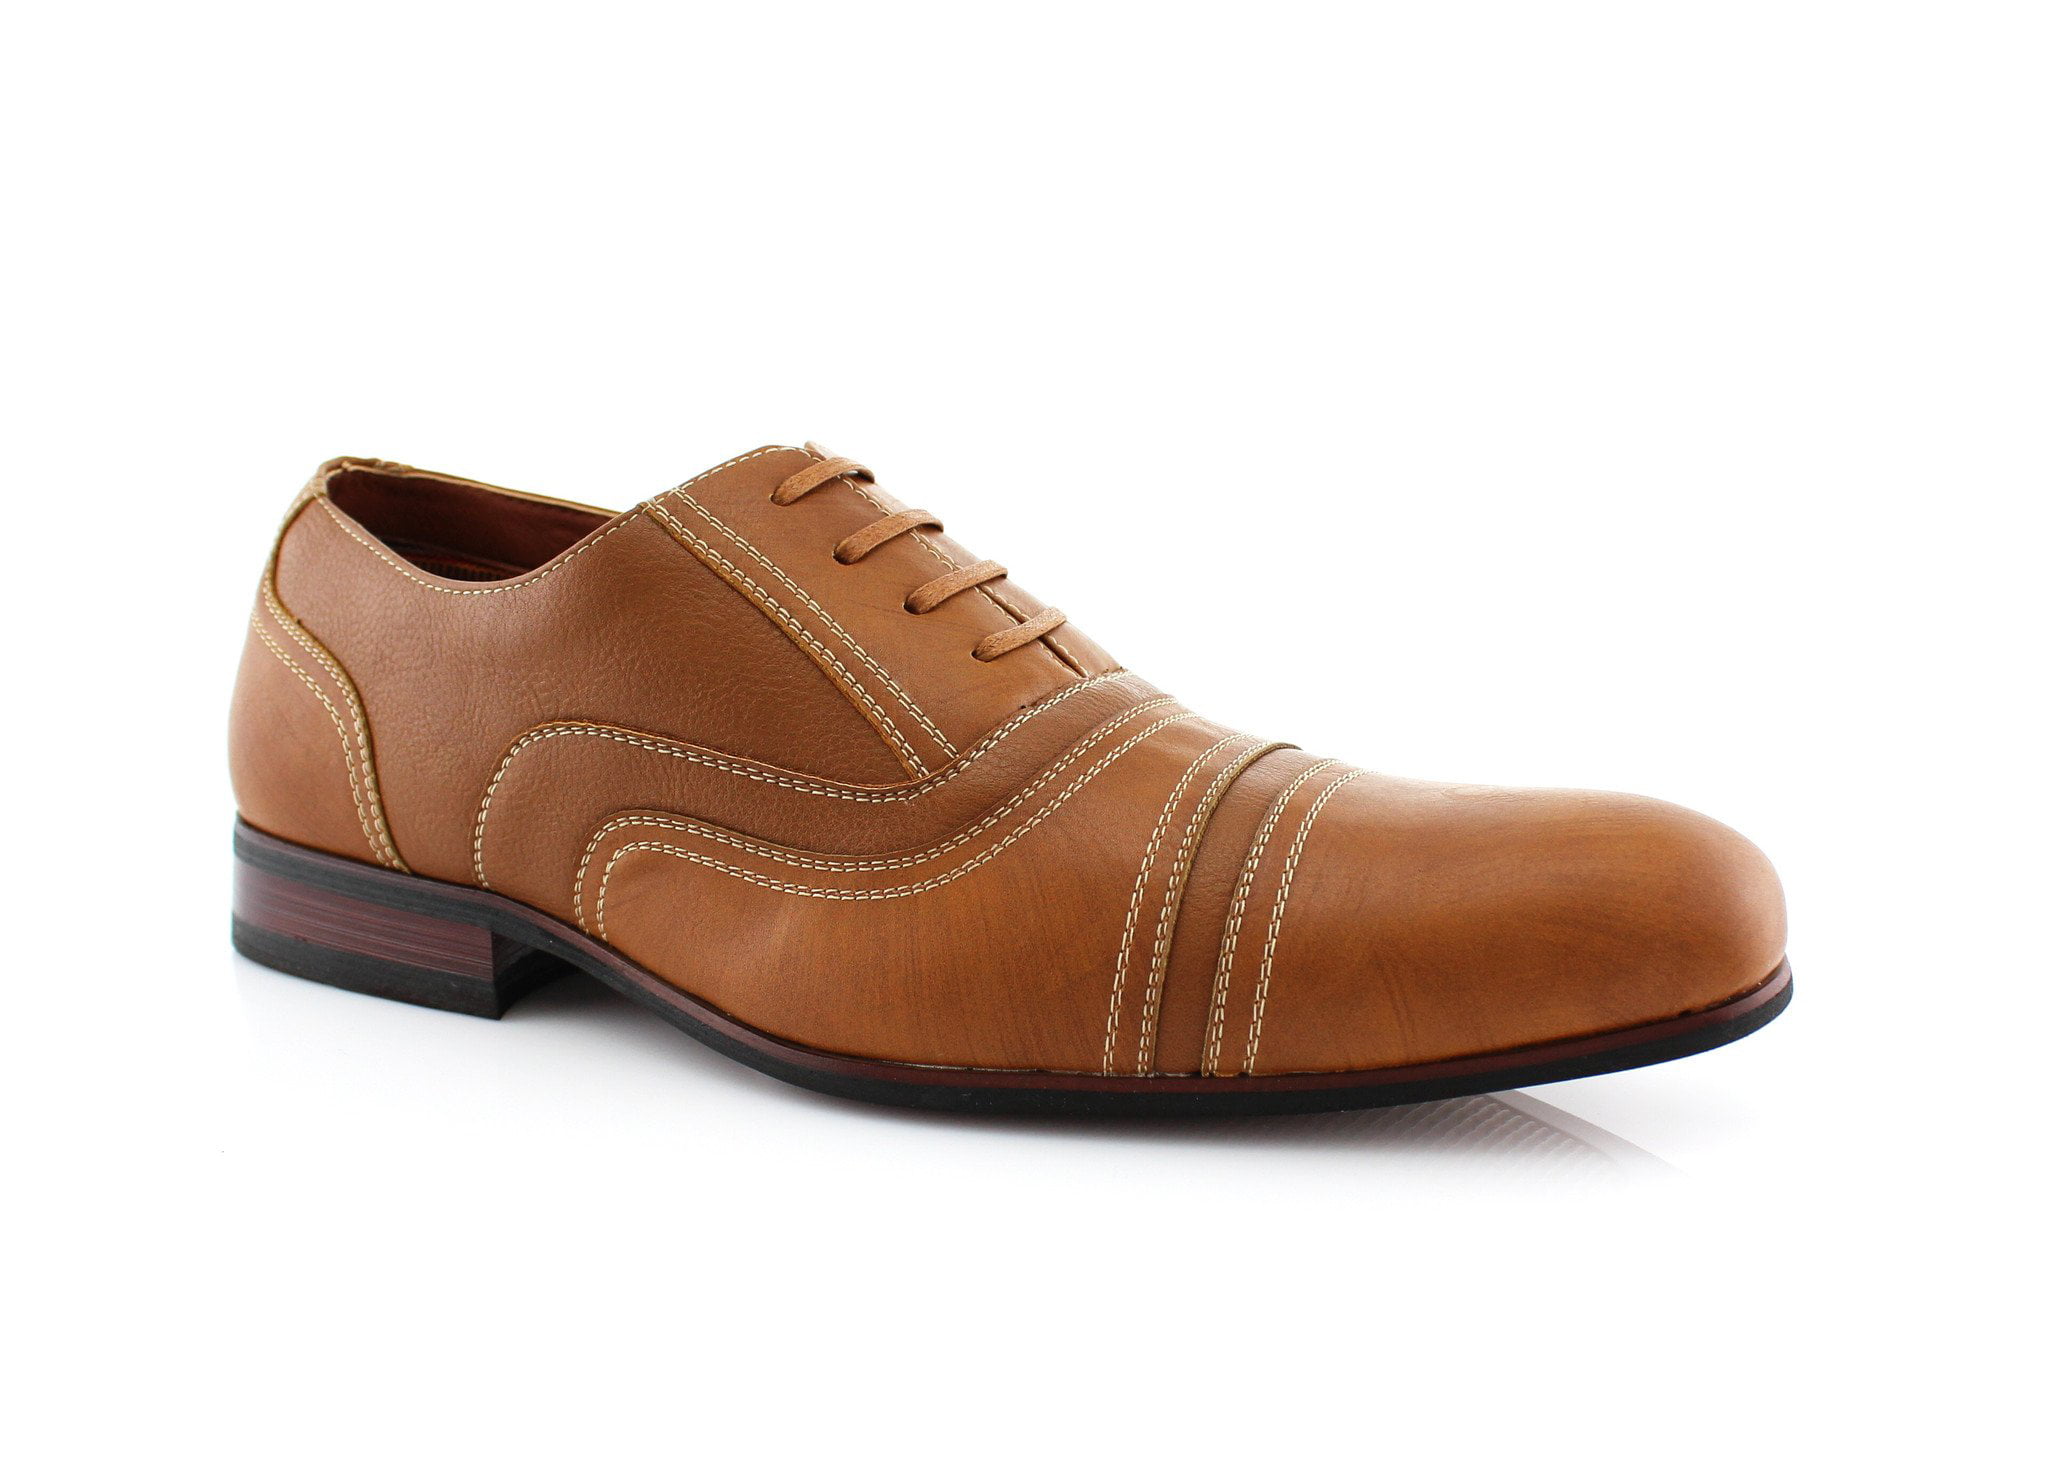 Details about   Men's Stacy Adams Dress Shoes Plain Toe Oxford Cognac Leather 25187 BALLARD 